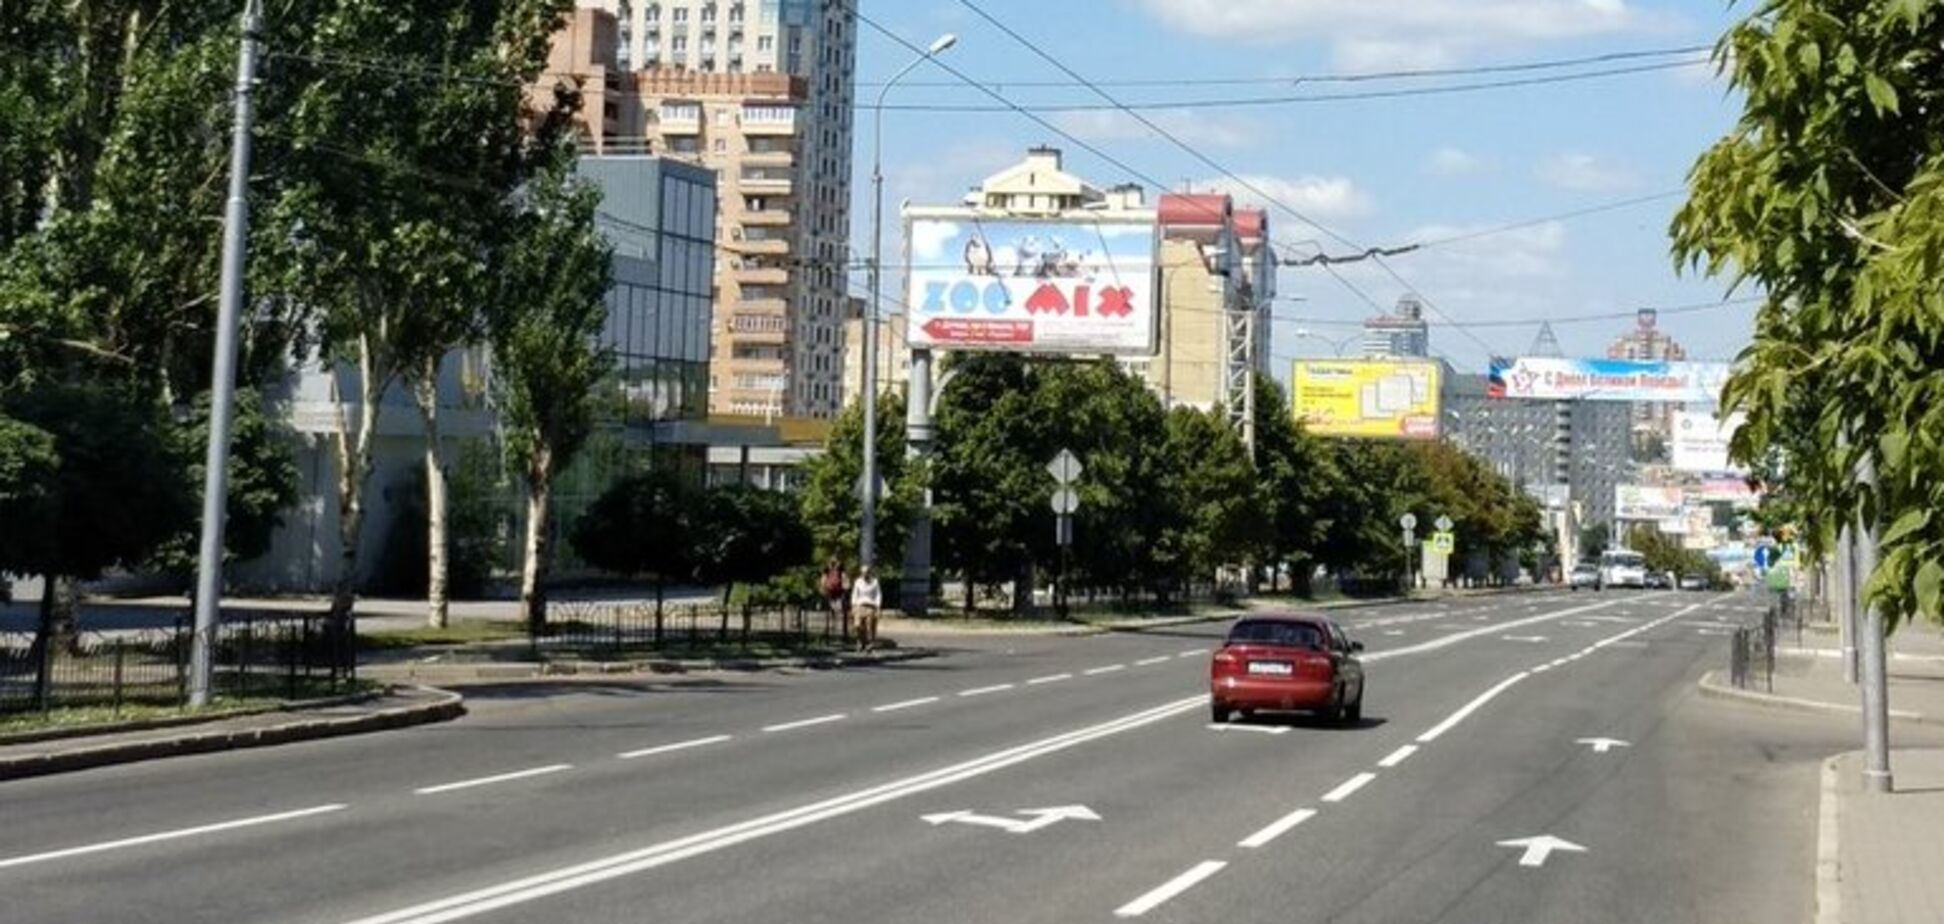 'Ж*па полная!' В сети показали новые фото с Донецка